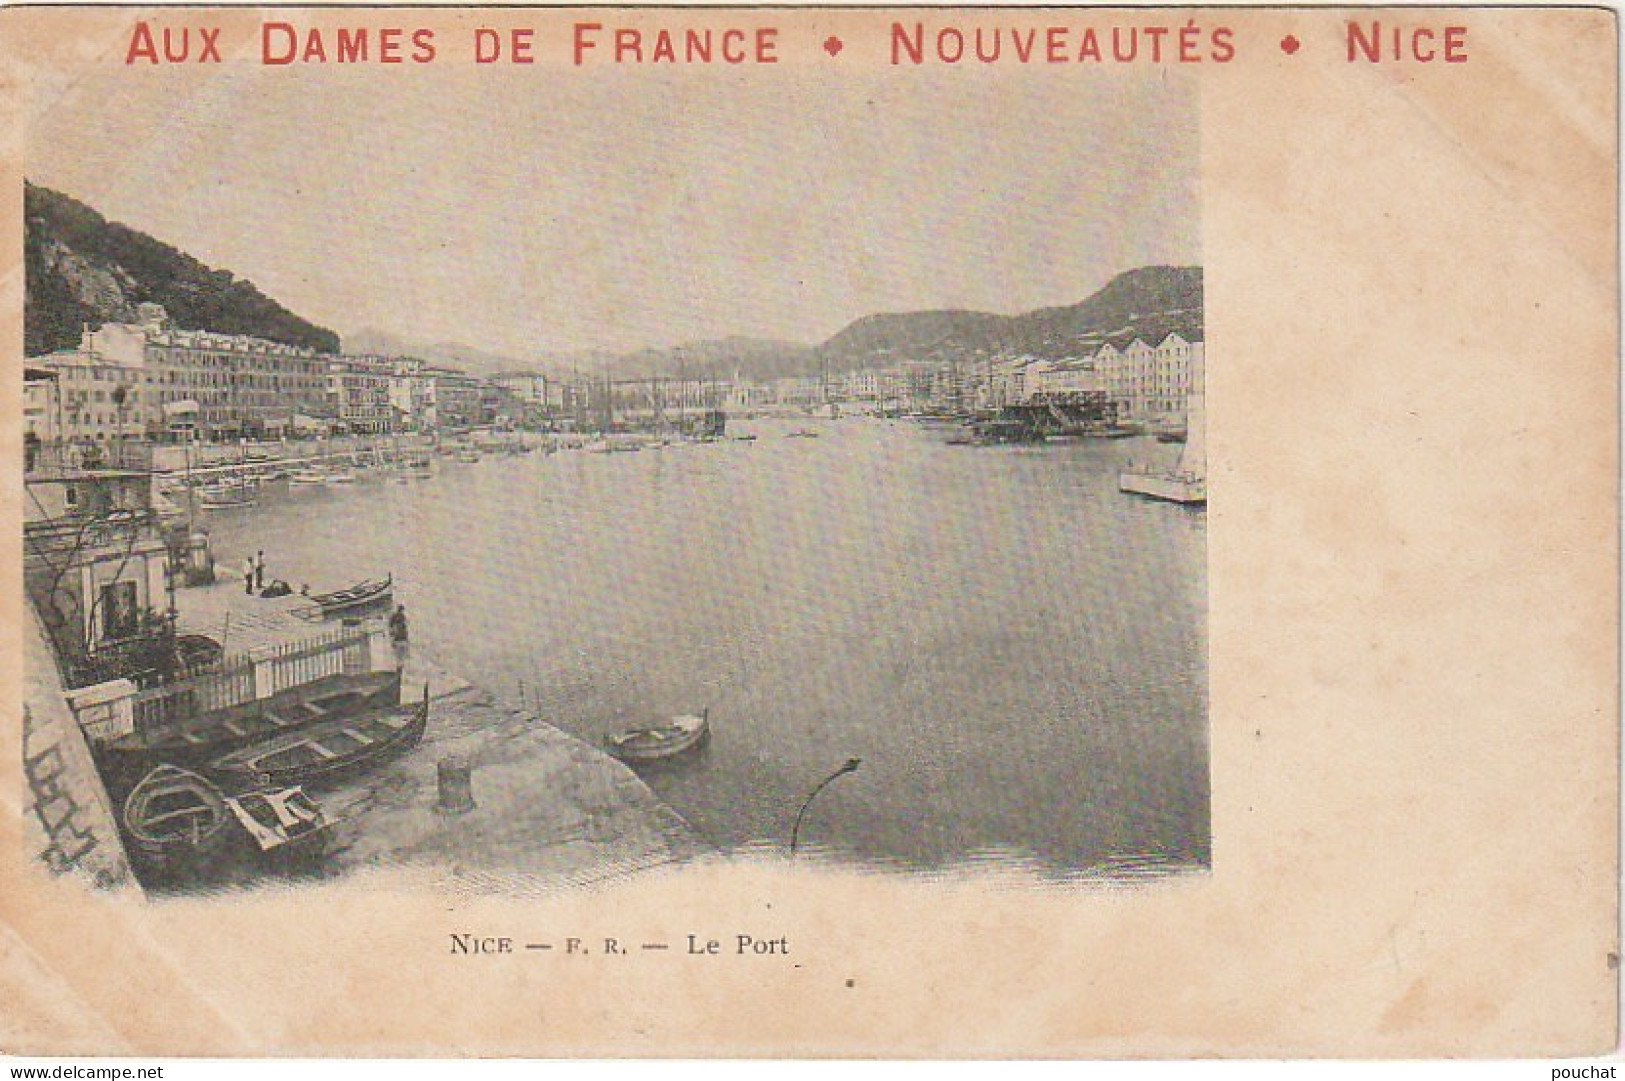 OP Nw31-(06) NICE - LE PORT - CARTE PUBLICITAIRE " AUX DAMES DE FRANCE " , NICE - 2 SCANS - Transport (sea) - Harbour